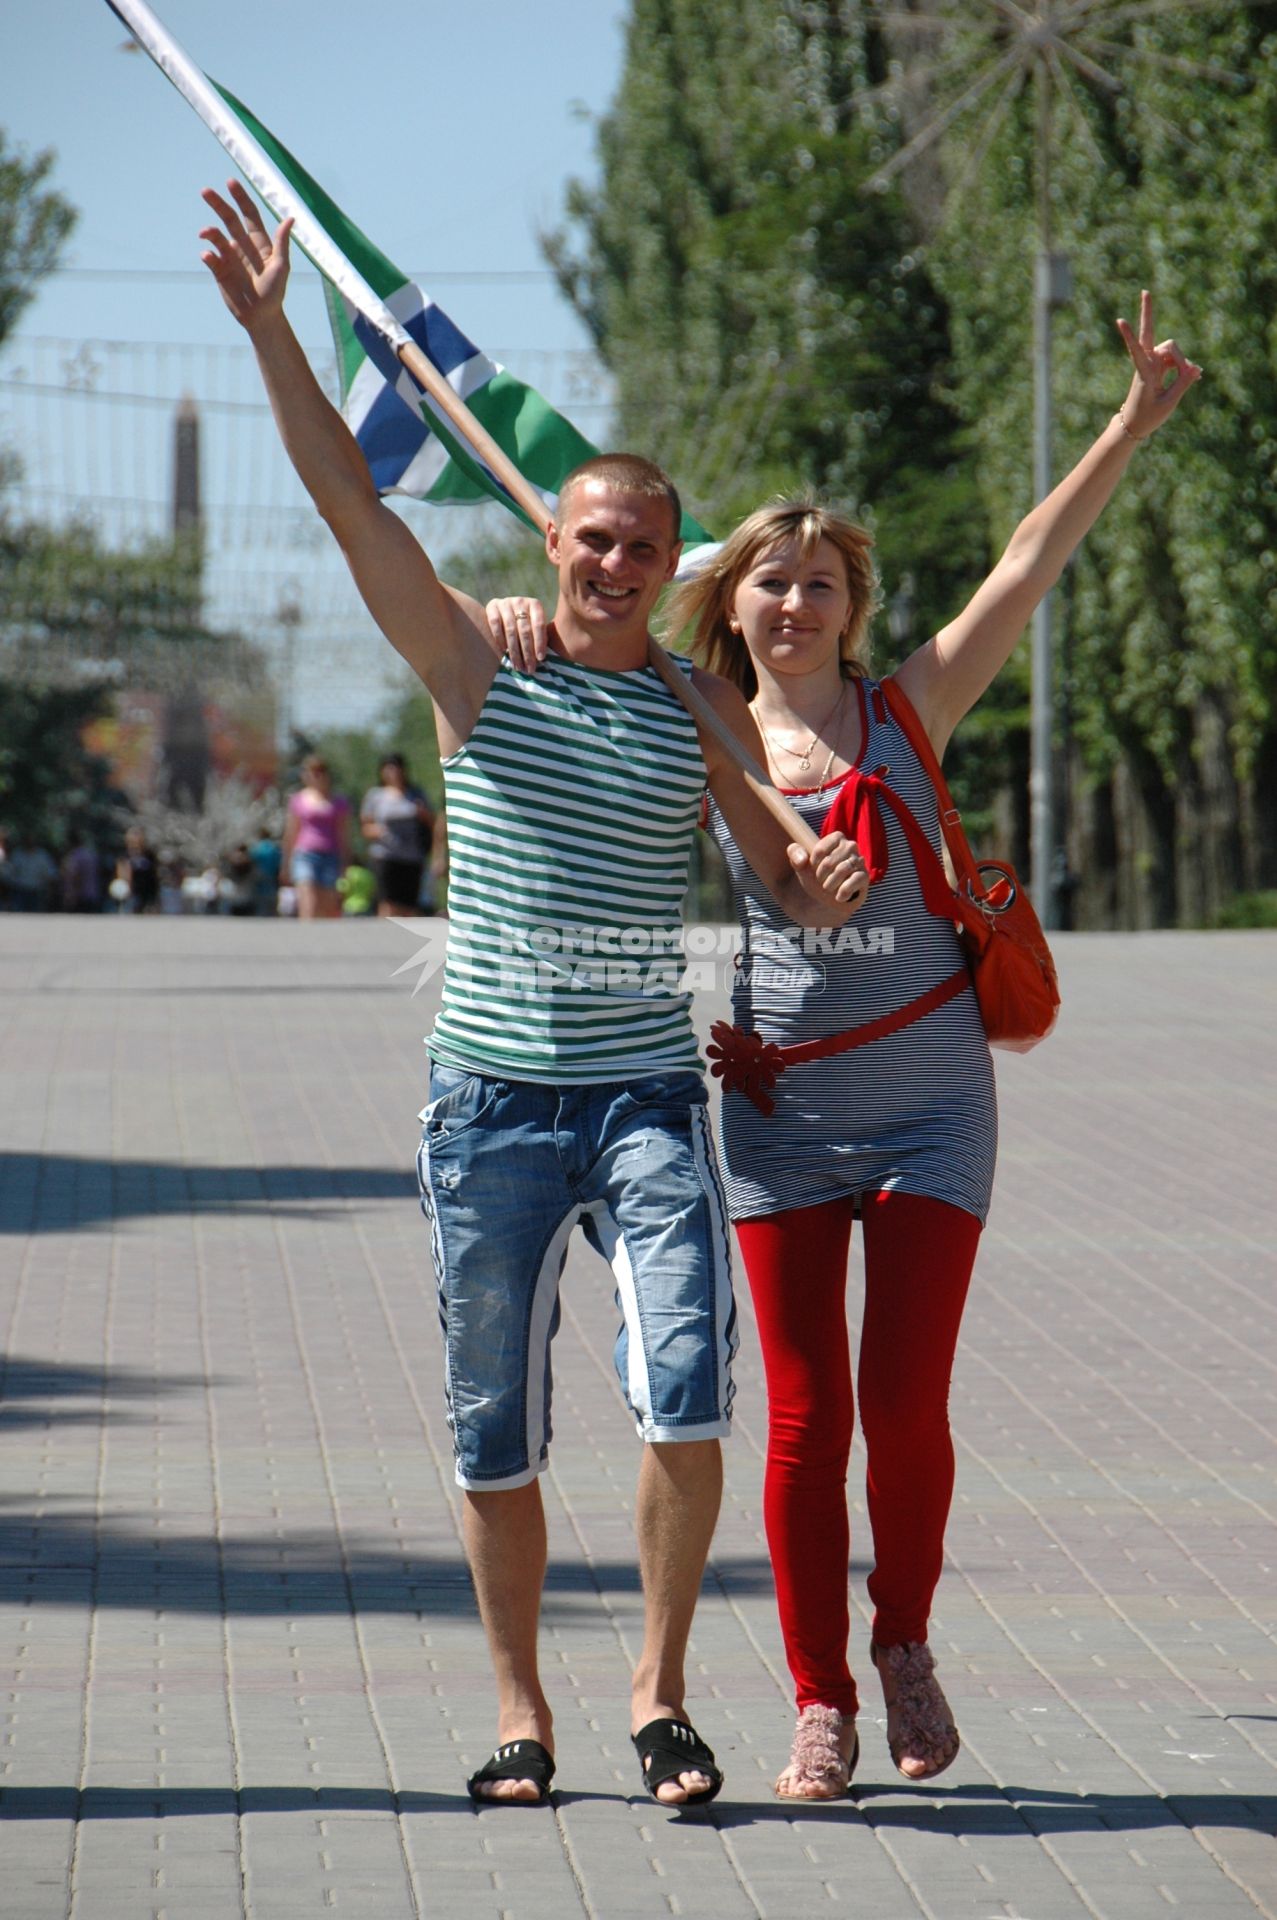 Празднование дня пограничника в Волгограде. На снимке: мужчина в тельняшке пограничника идет с девушкой по улице города.